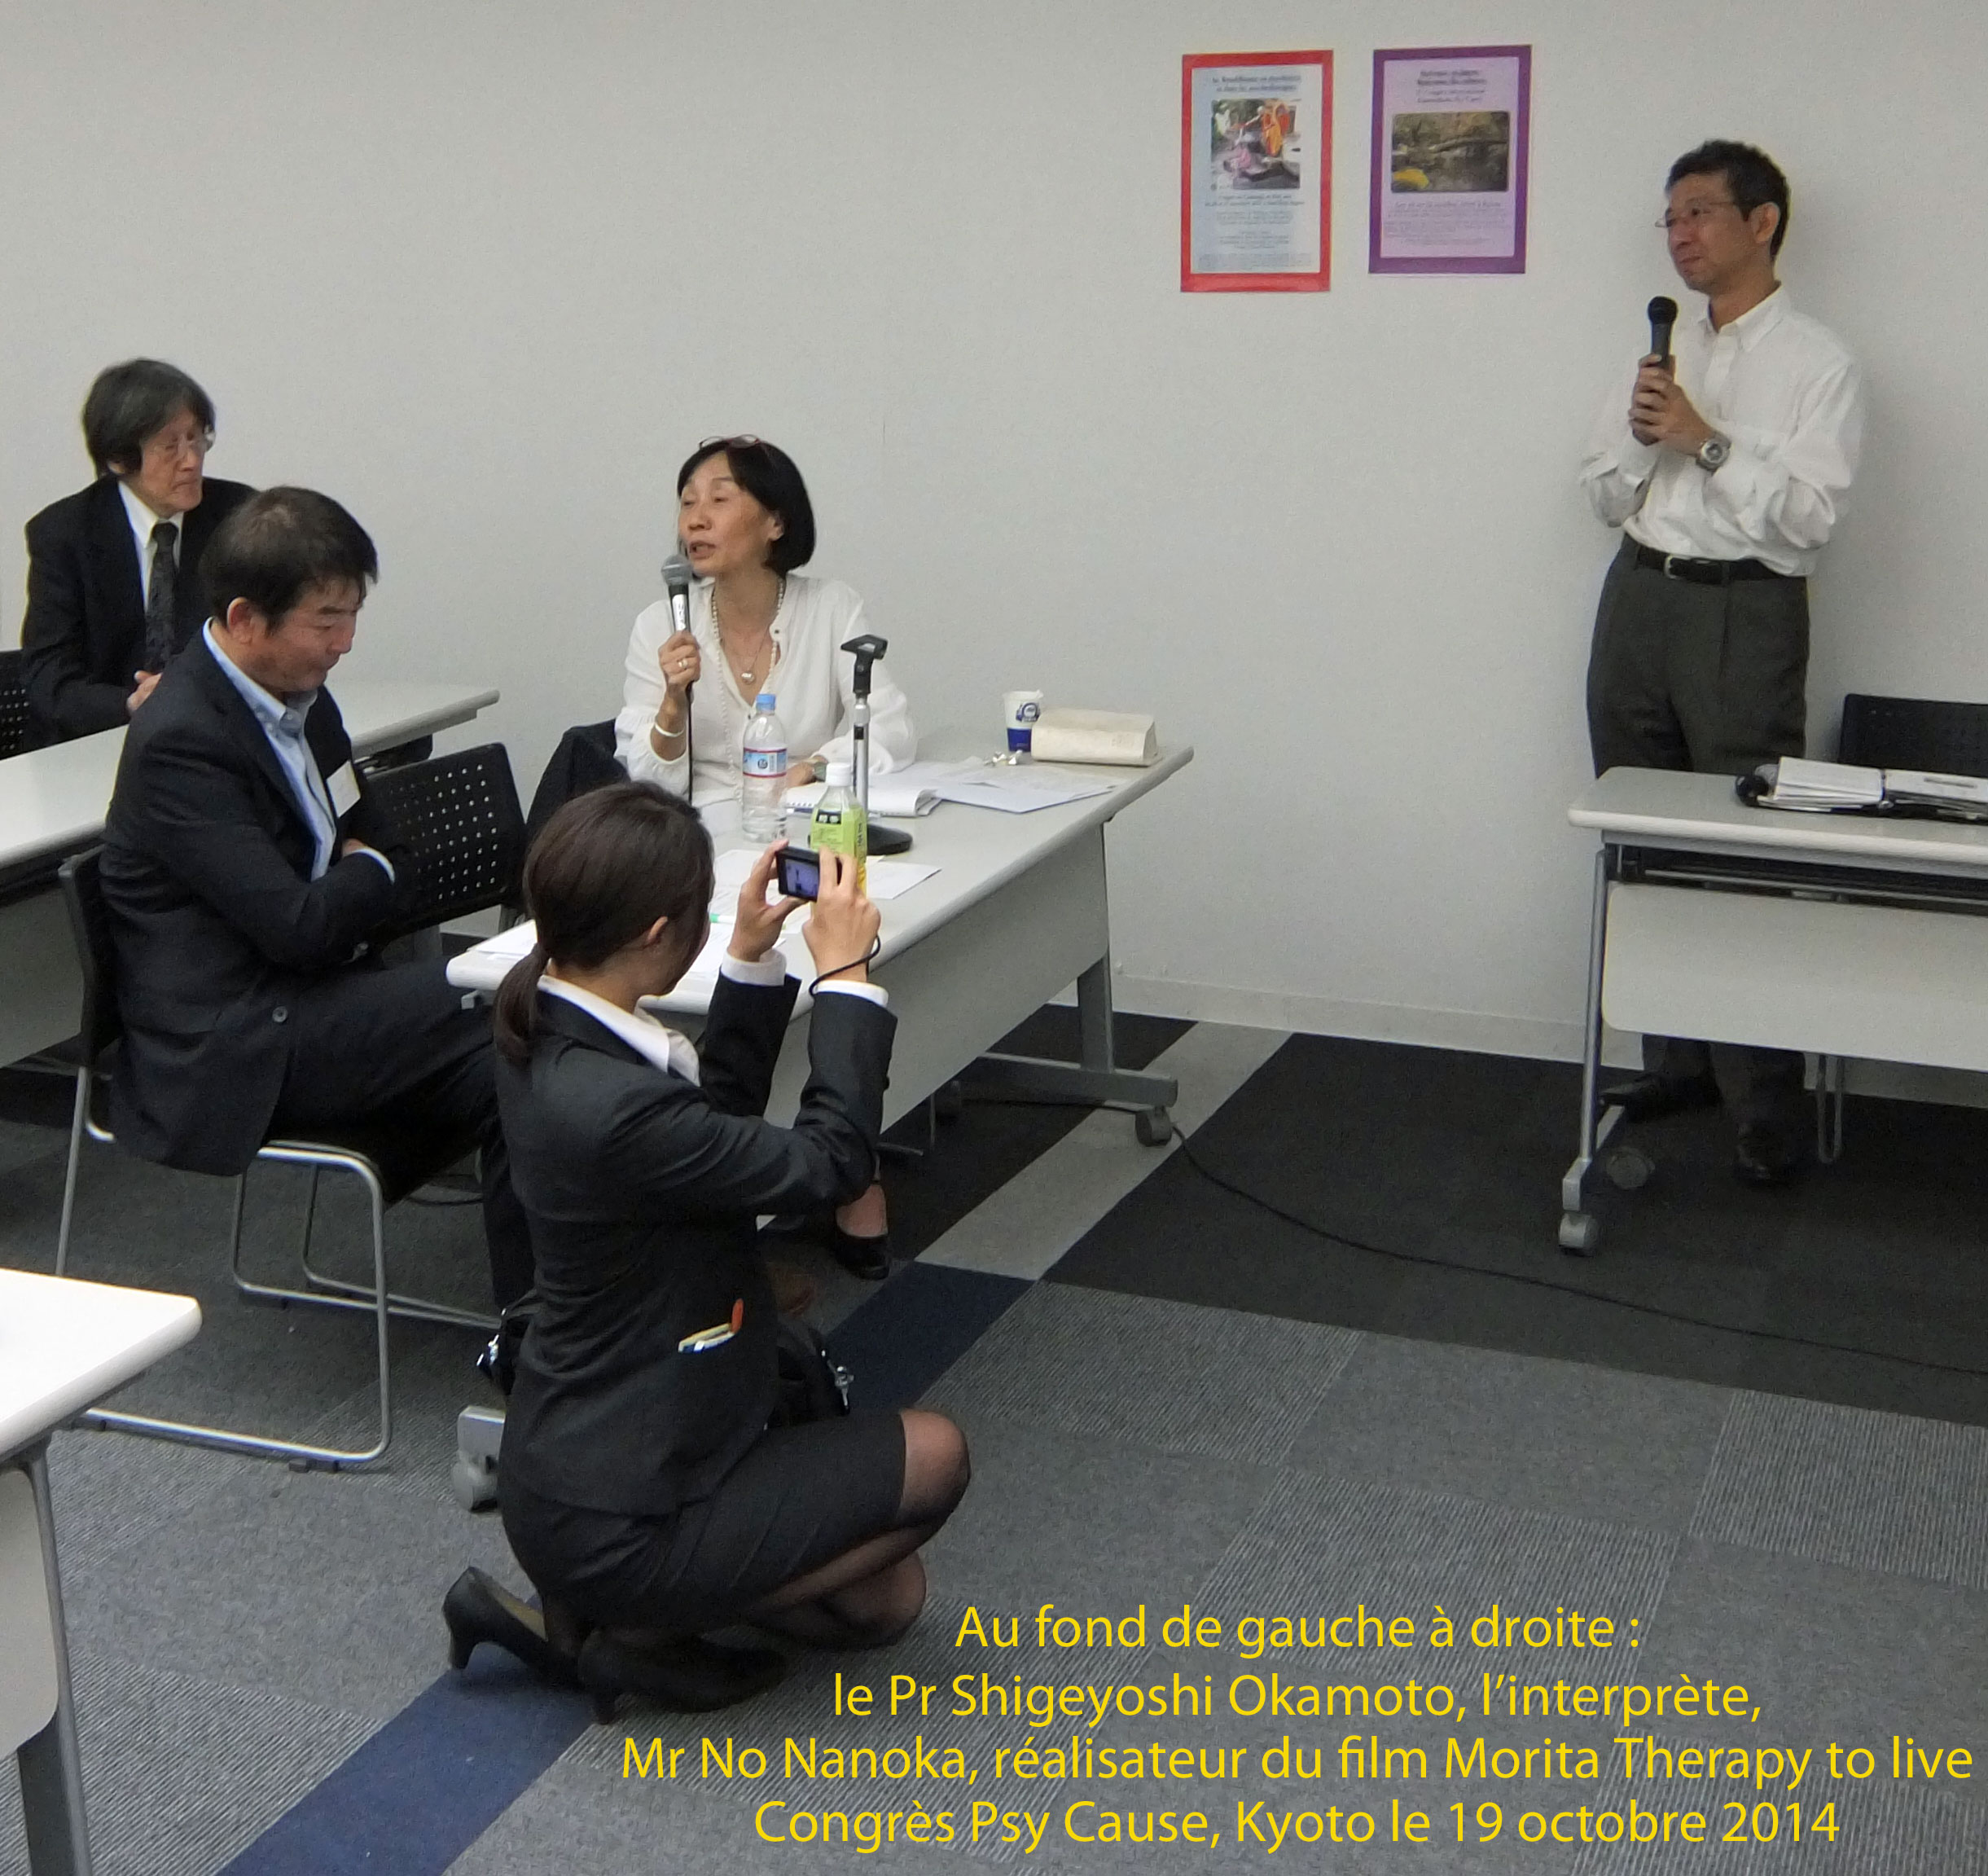 Journal du congrès de Kyoto : carnet N°4. Après midi de congrès du 19 octobre 2014